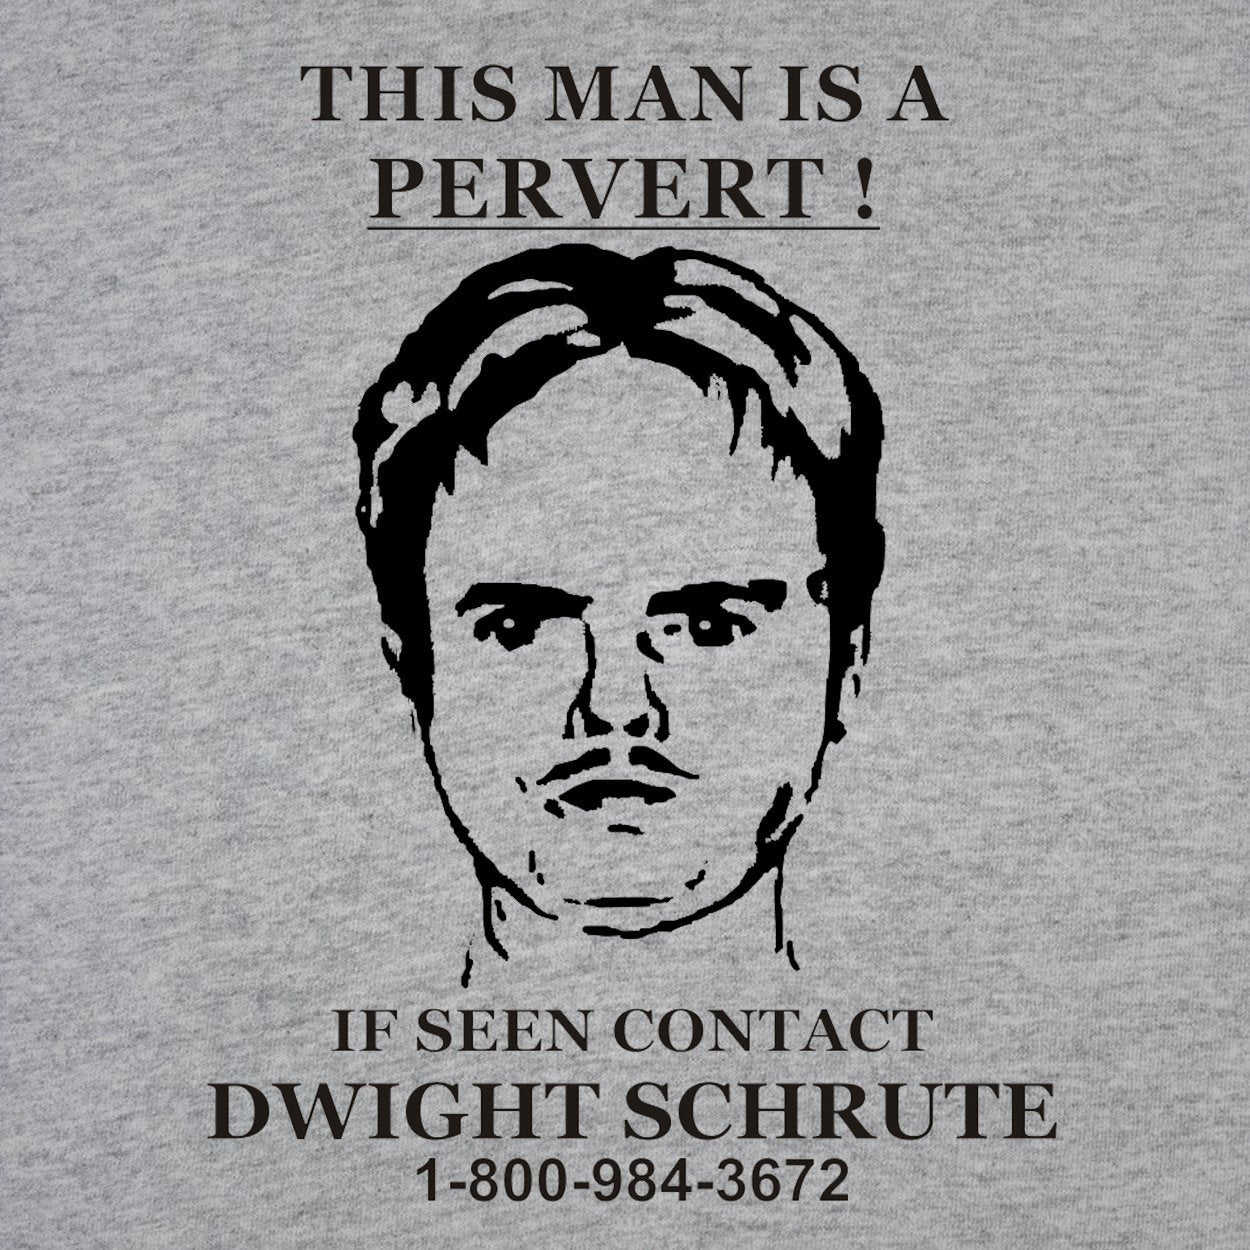 Dwight Schrute Pervert Sign Men's T-Shirt